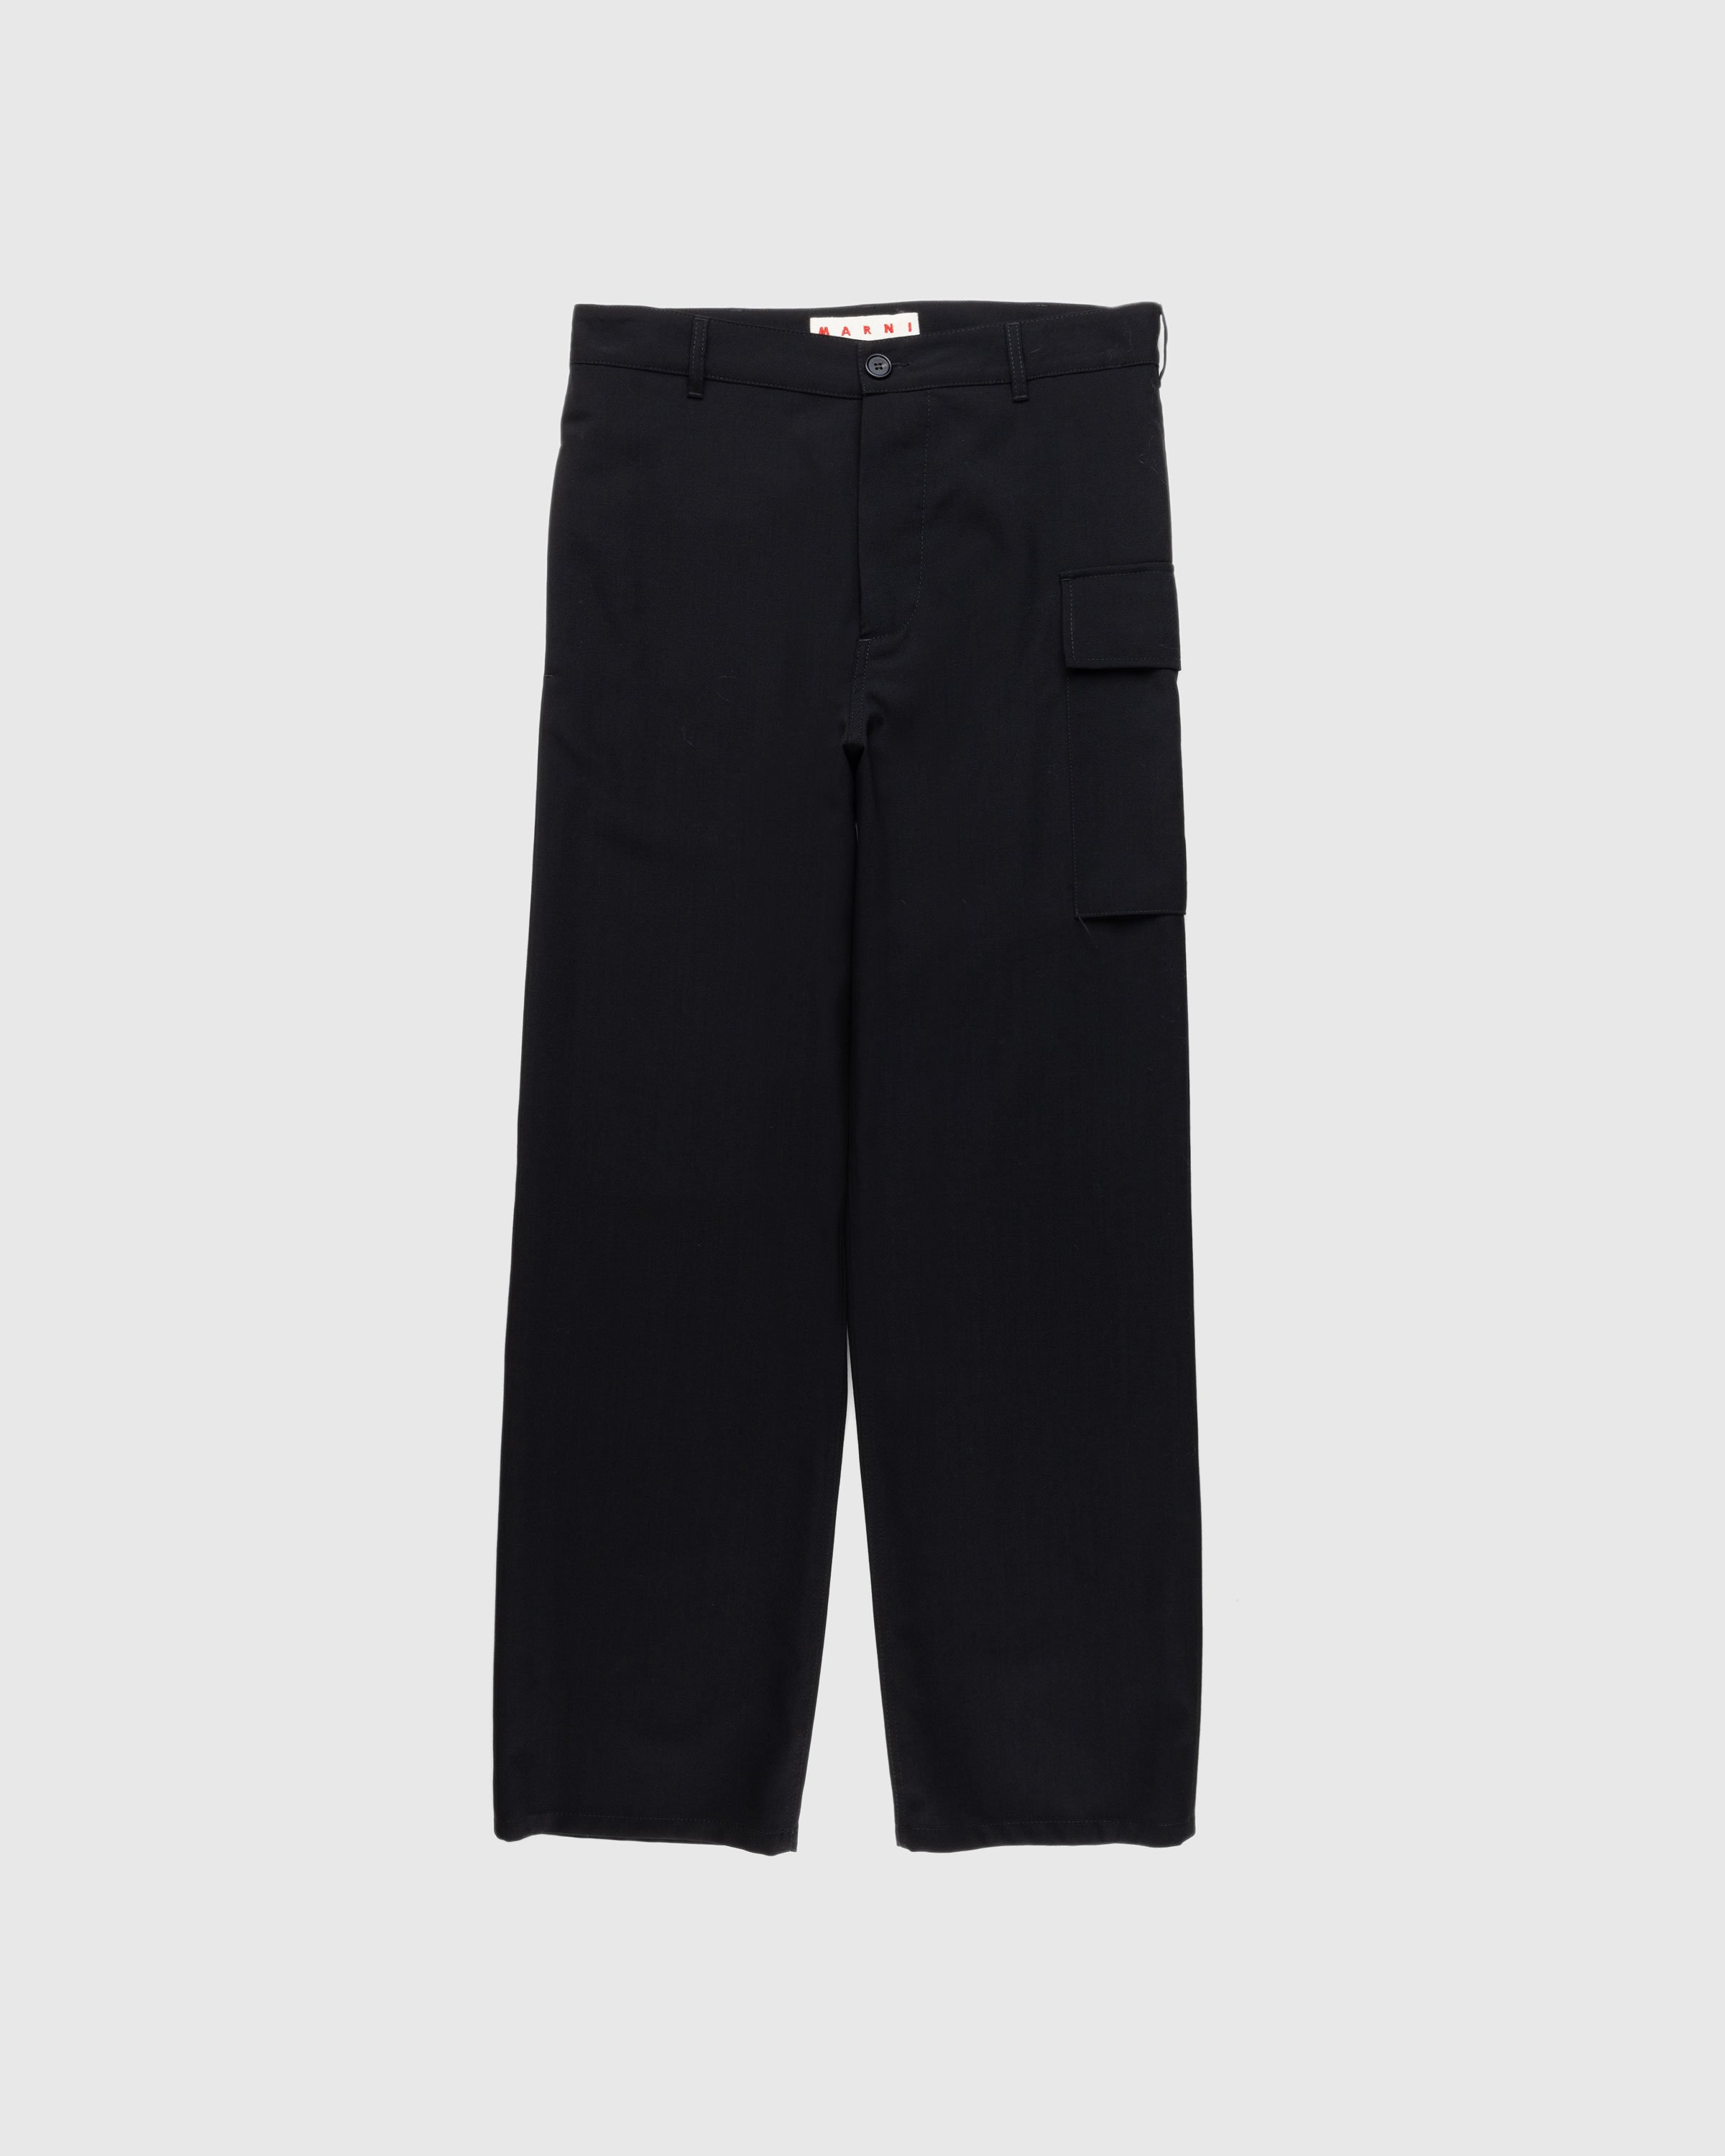 Marni - Cargo Pocket Wool Trousers Black - Clothing - Black - Image 1